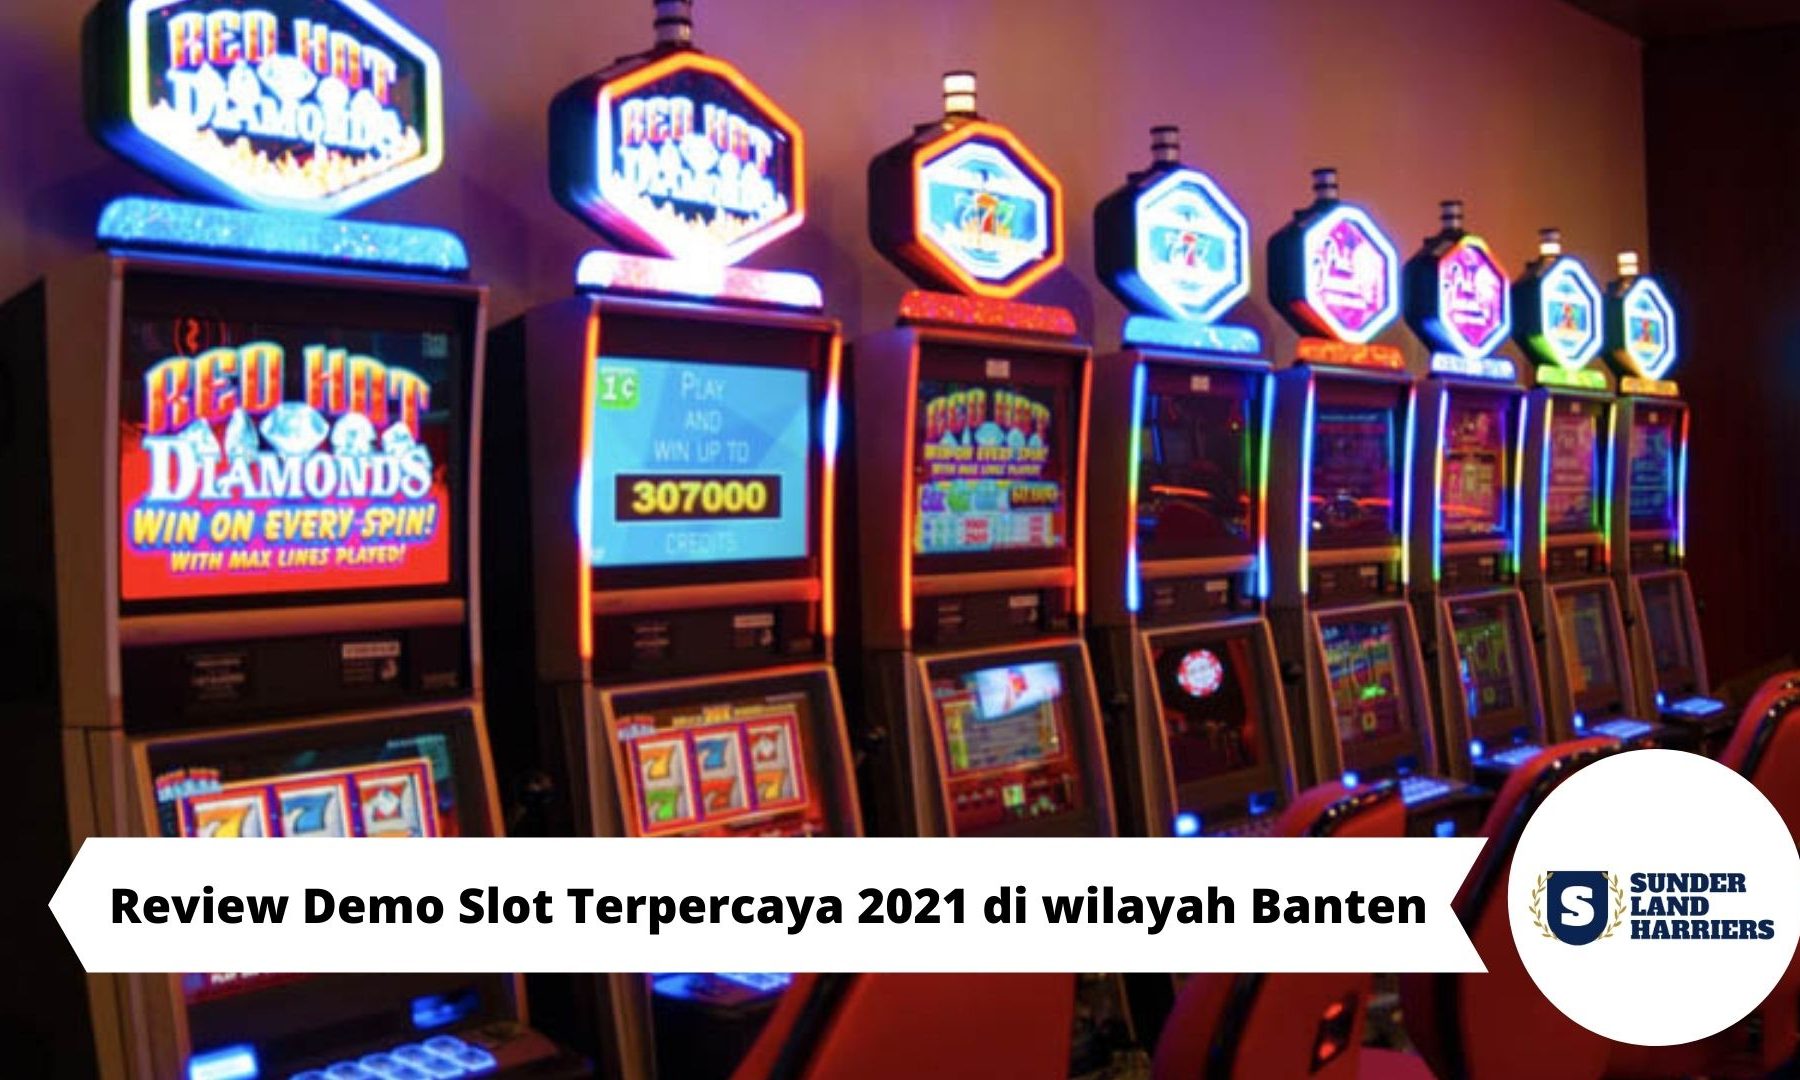 Review Demo Slot Terpercaya 2021 di wilayah Banten